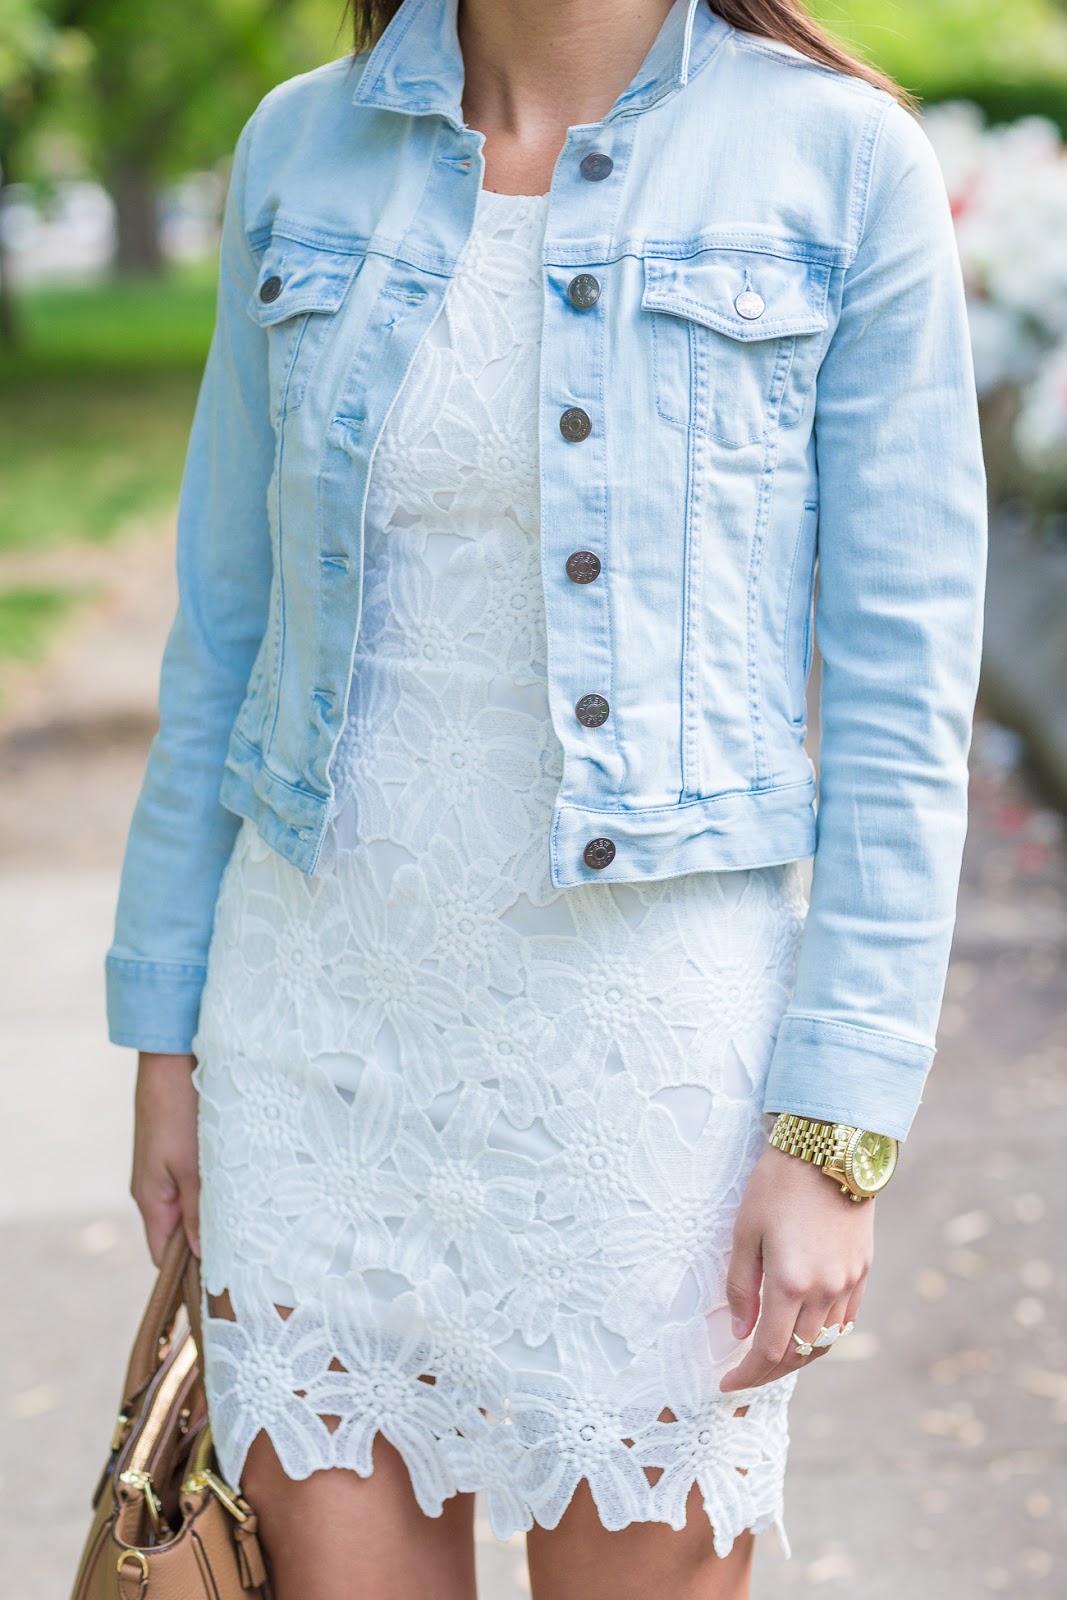 White Crochet Dress + Denim Jacket | A Southern Drawl